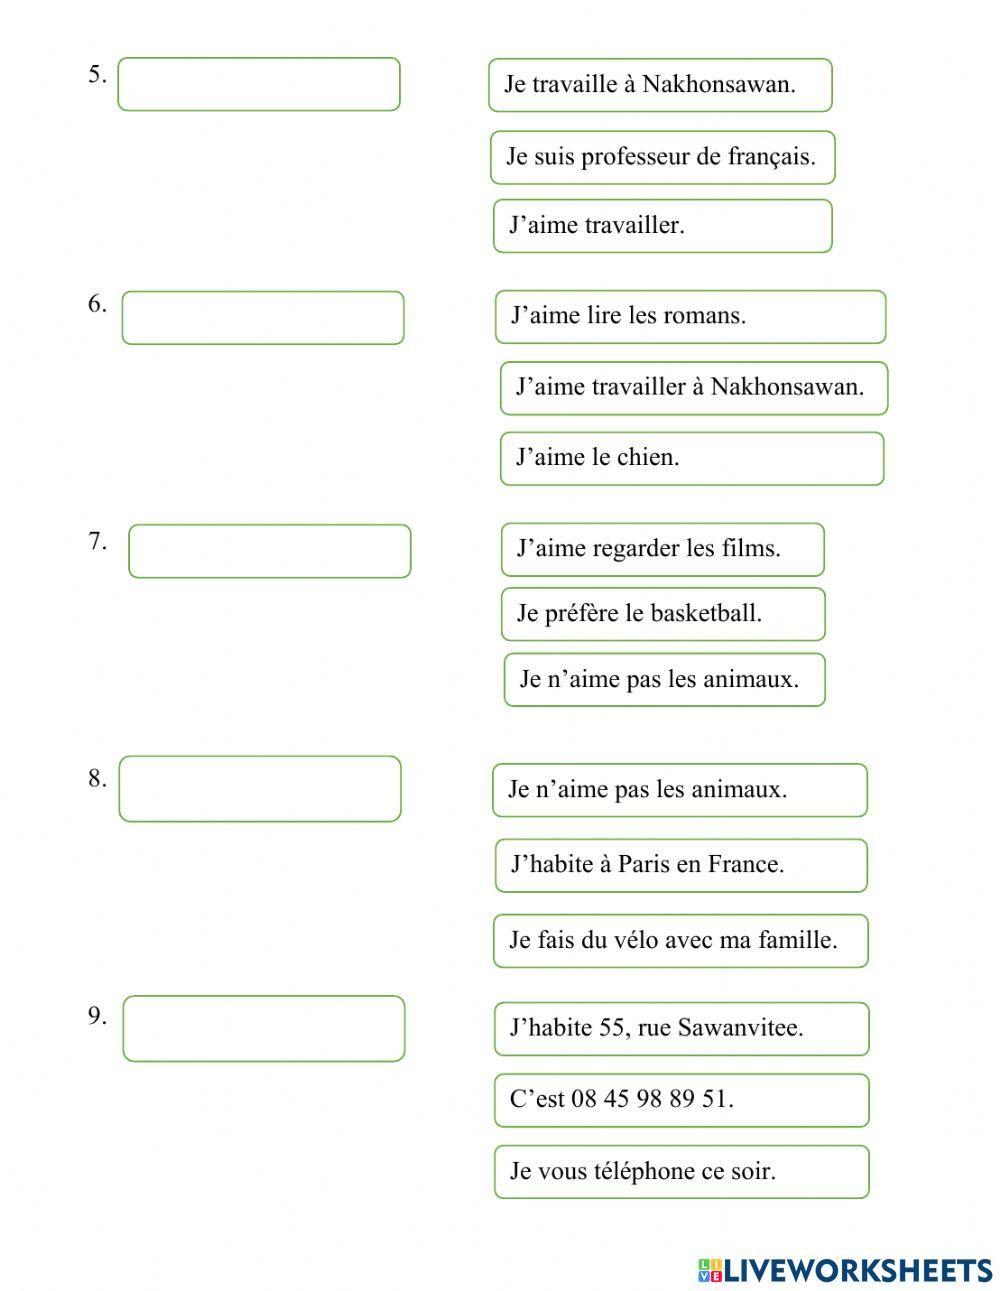 แบบทดสอบฟังคำถามและเลือกคำตอบภาษาฝรั่งเศส